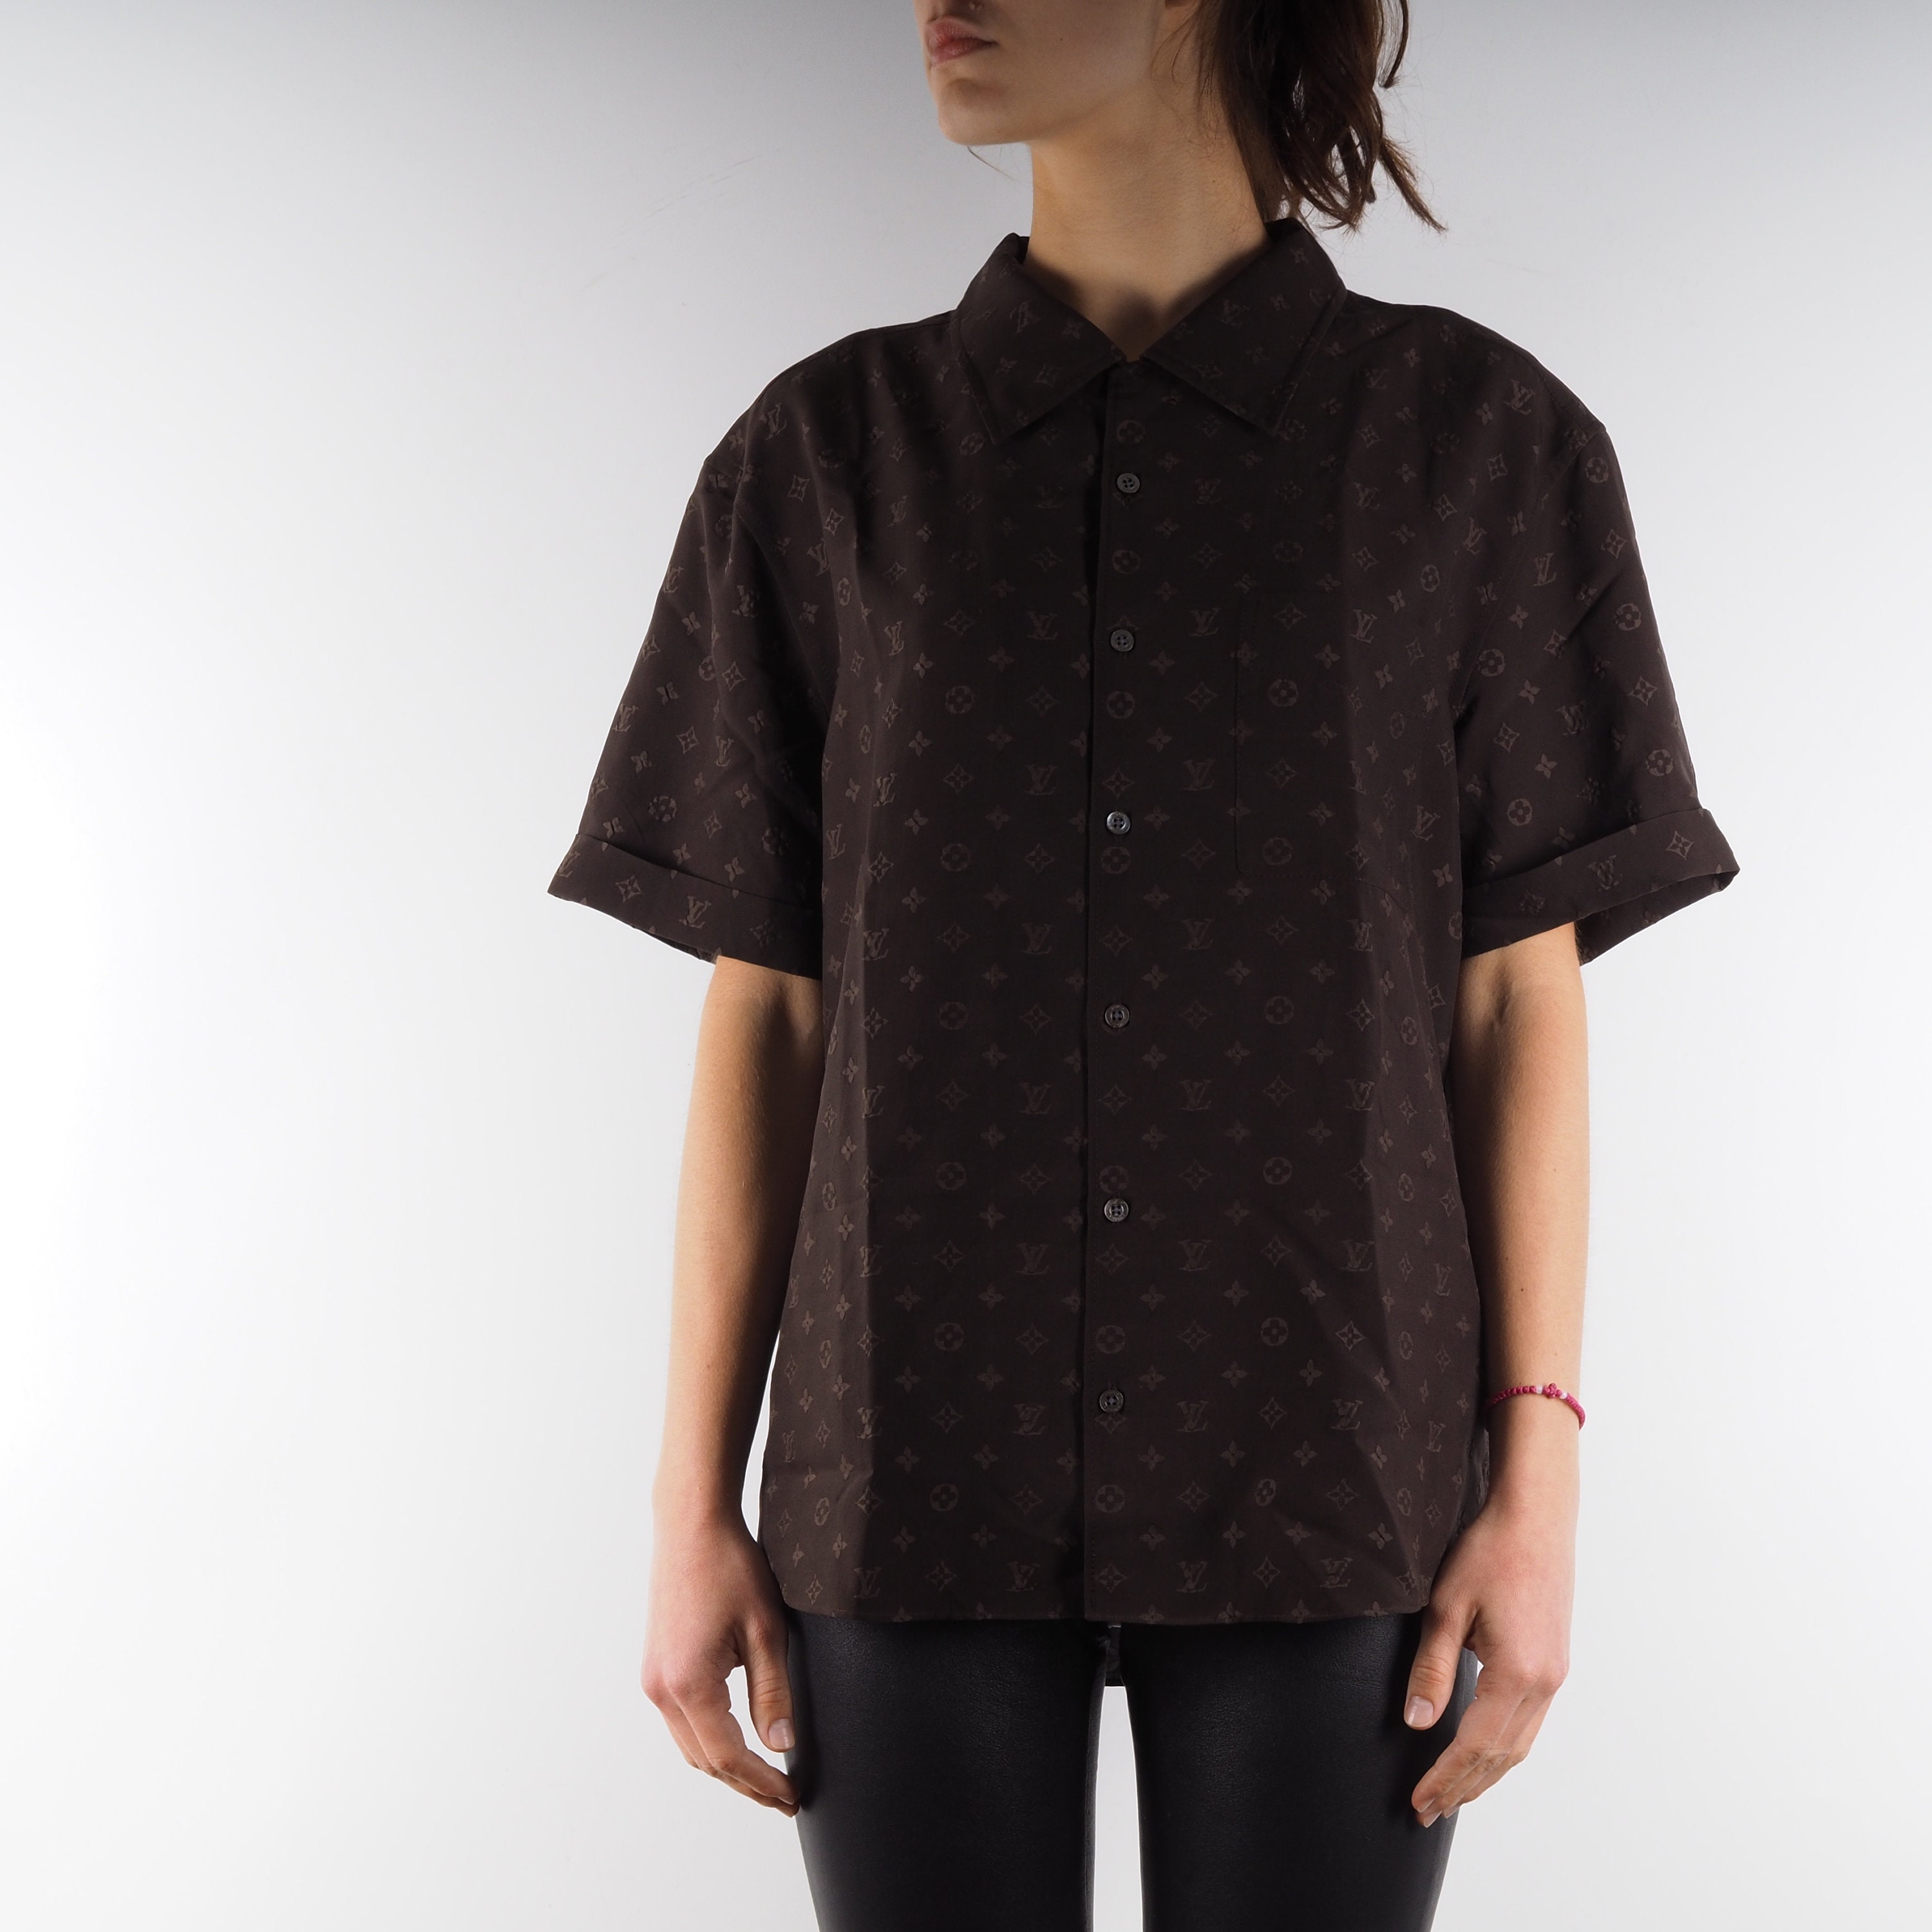 Louis Vuitton Logo Short Sleeve T-Shirt Tops Women Brown Beige